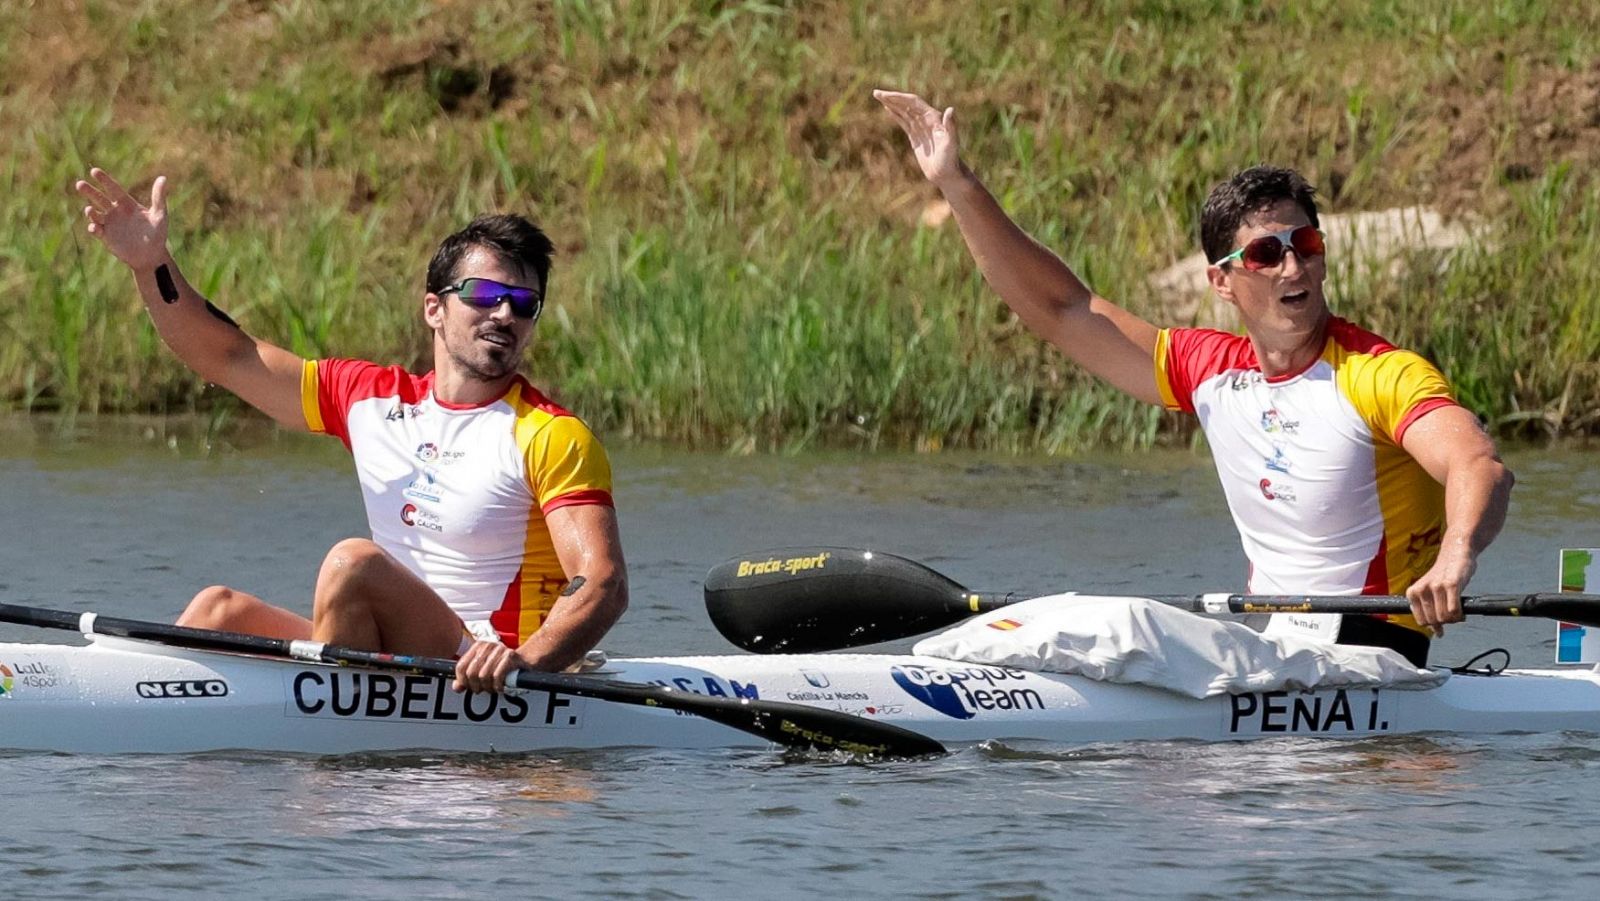 Mundiales de piragüismo. Paco Cubelos e Íñigo Peña logran la primera medalla española